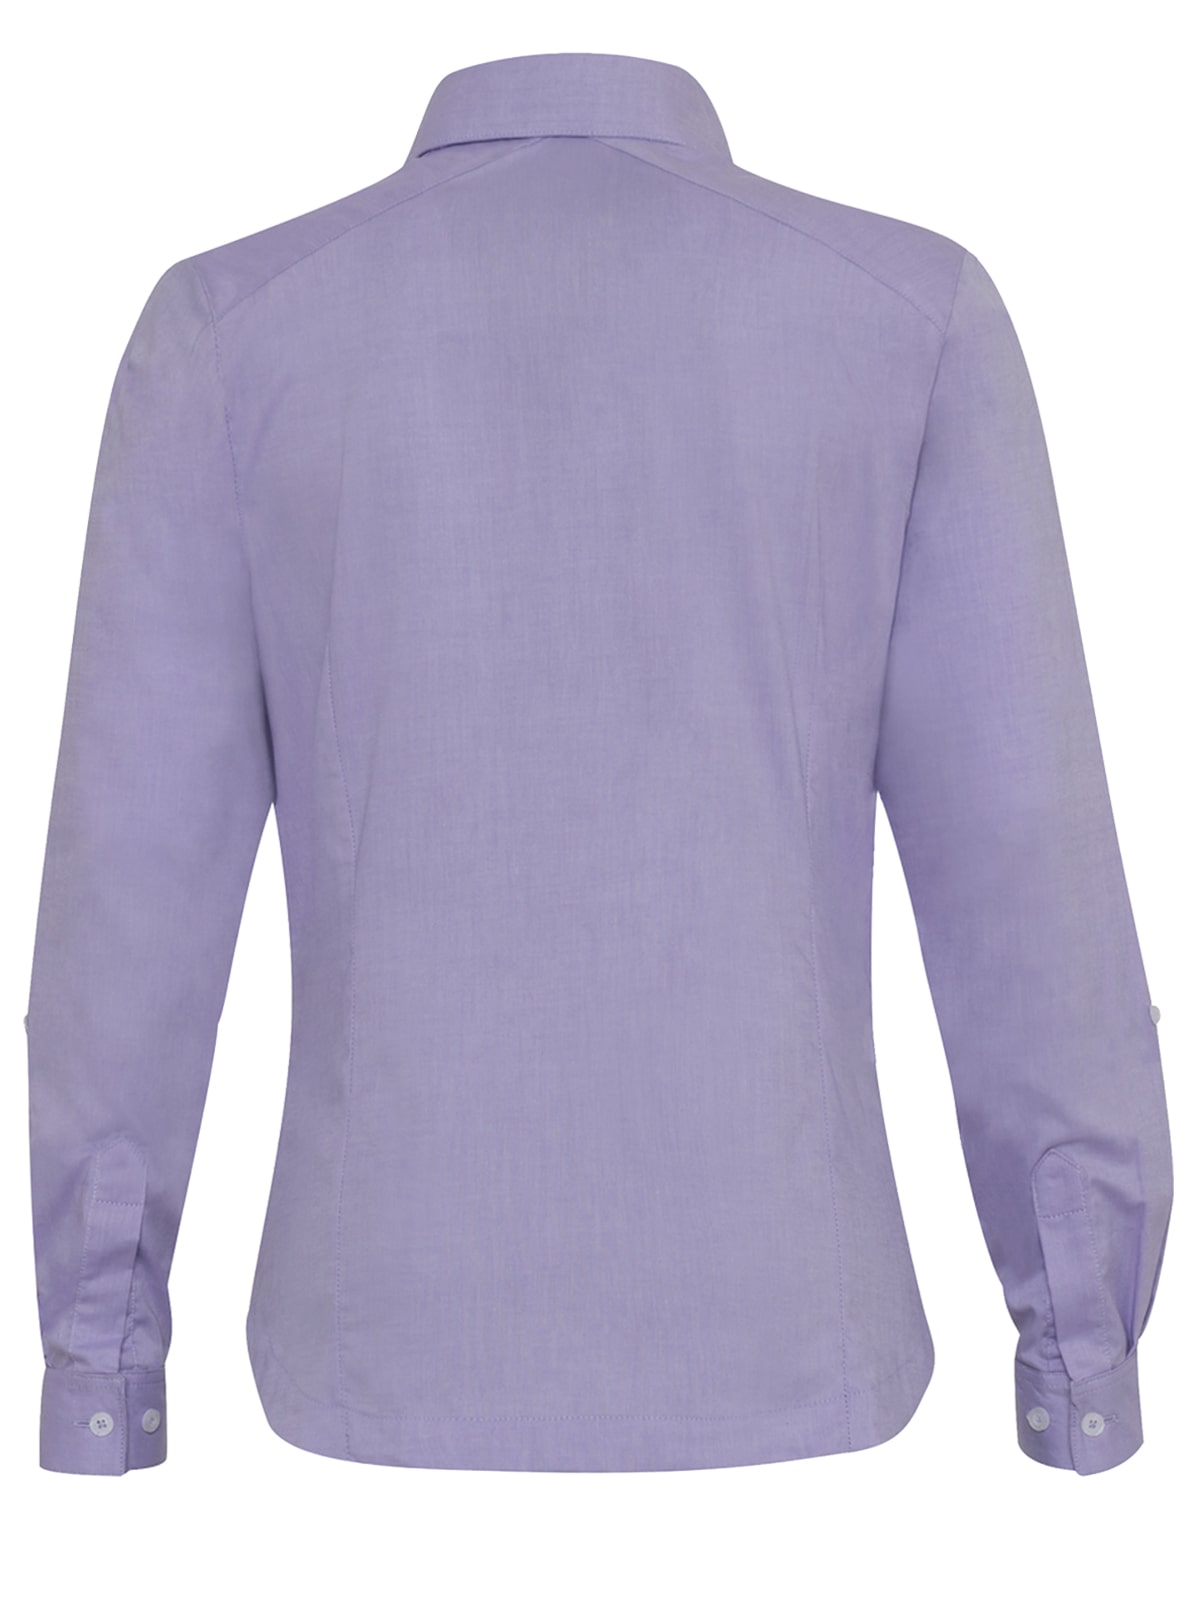 Oxford blouse purple color rear view